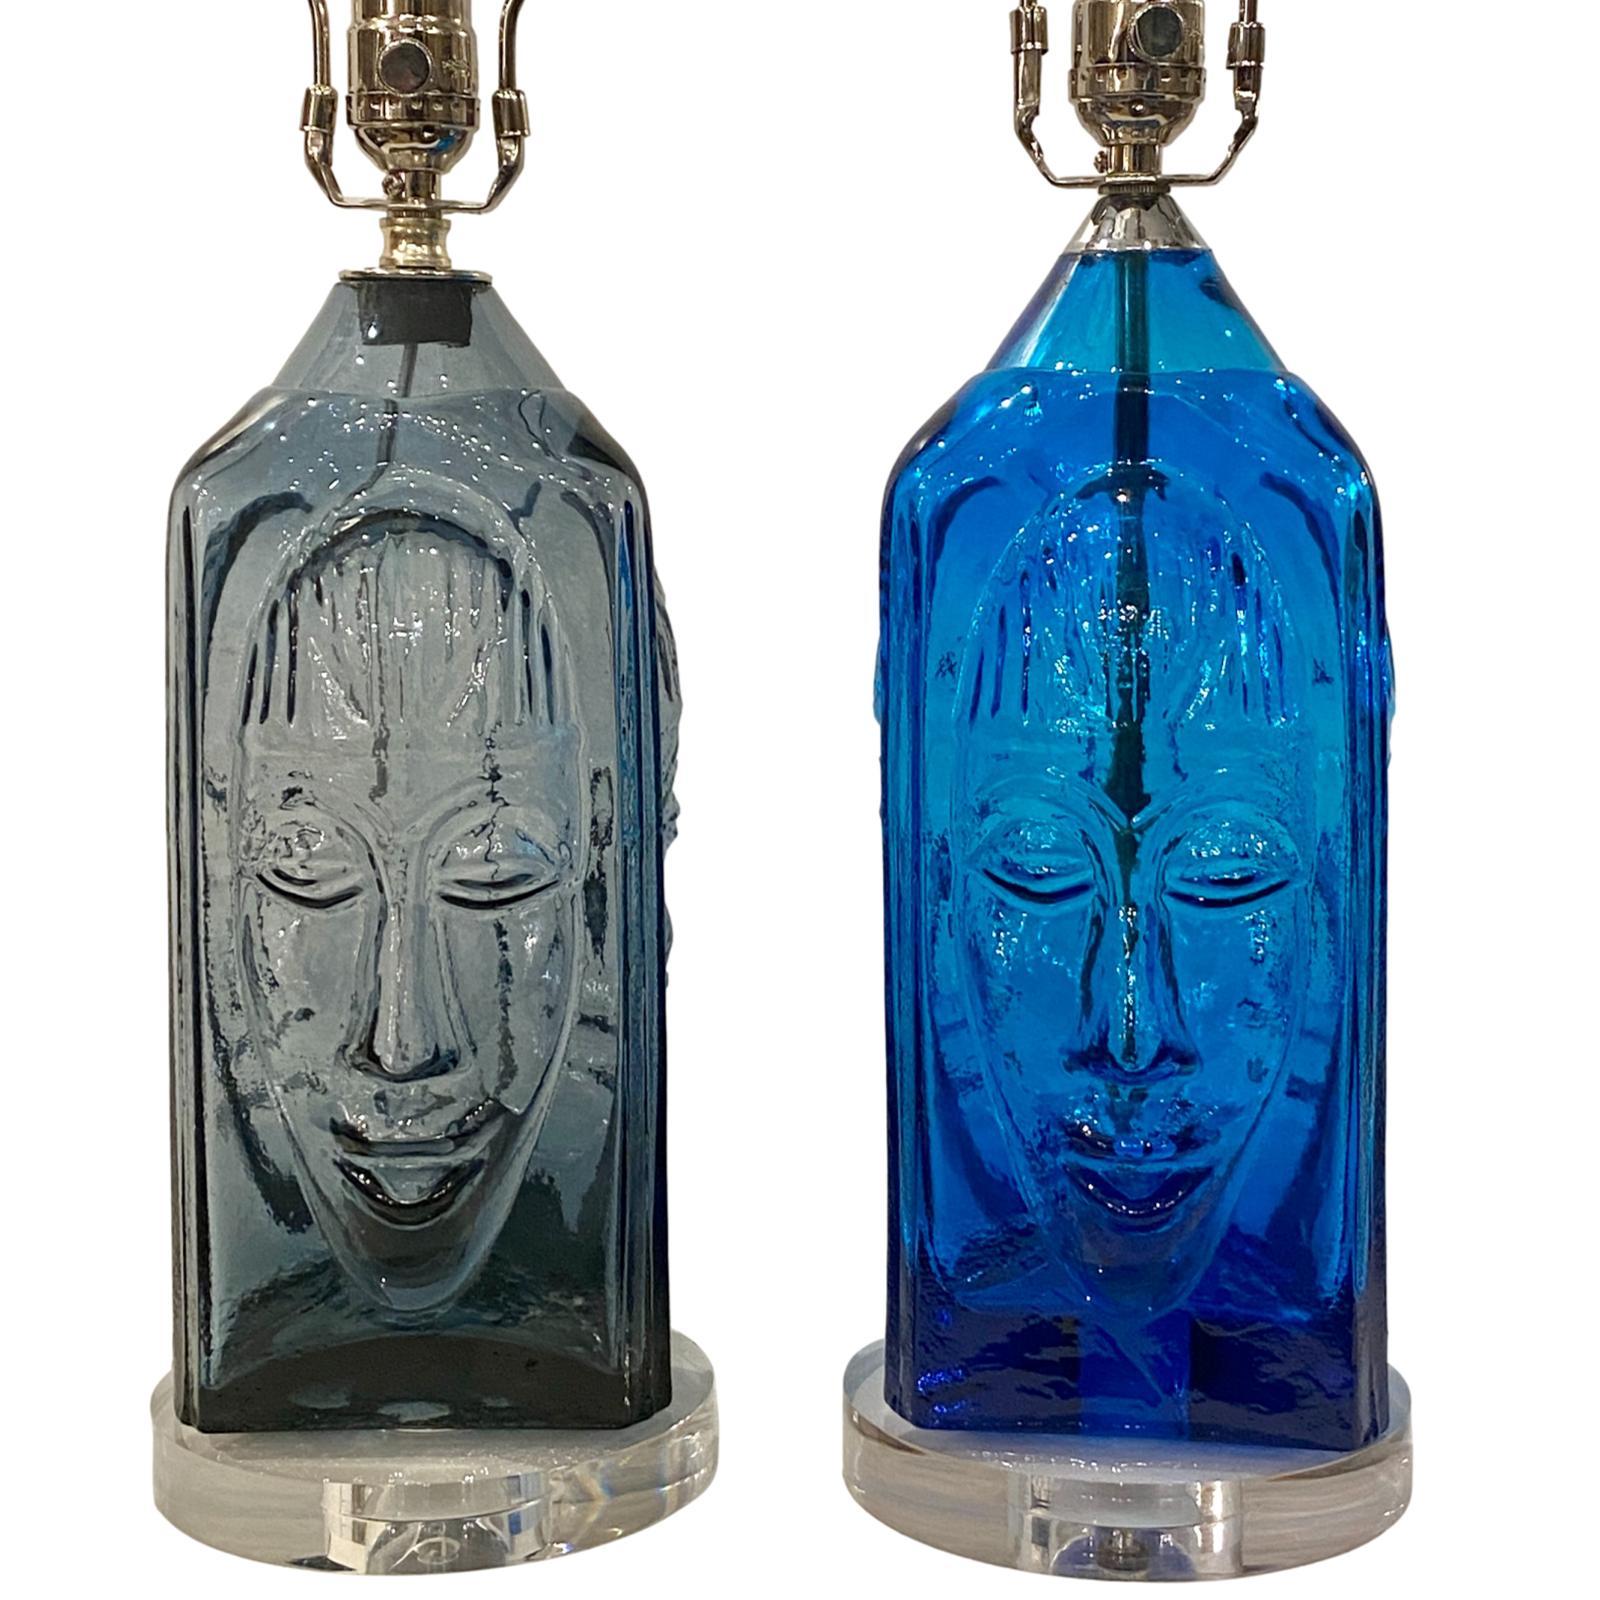 Ein Paar schwedische Tischlampen aus blauem und rauchfarbenem Glas aus den 1960er Jahren mit Sockeln aus Lucite und vernickelten Beschlägen.

Abmessungen:
Höhe des Körpers 14